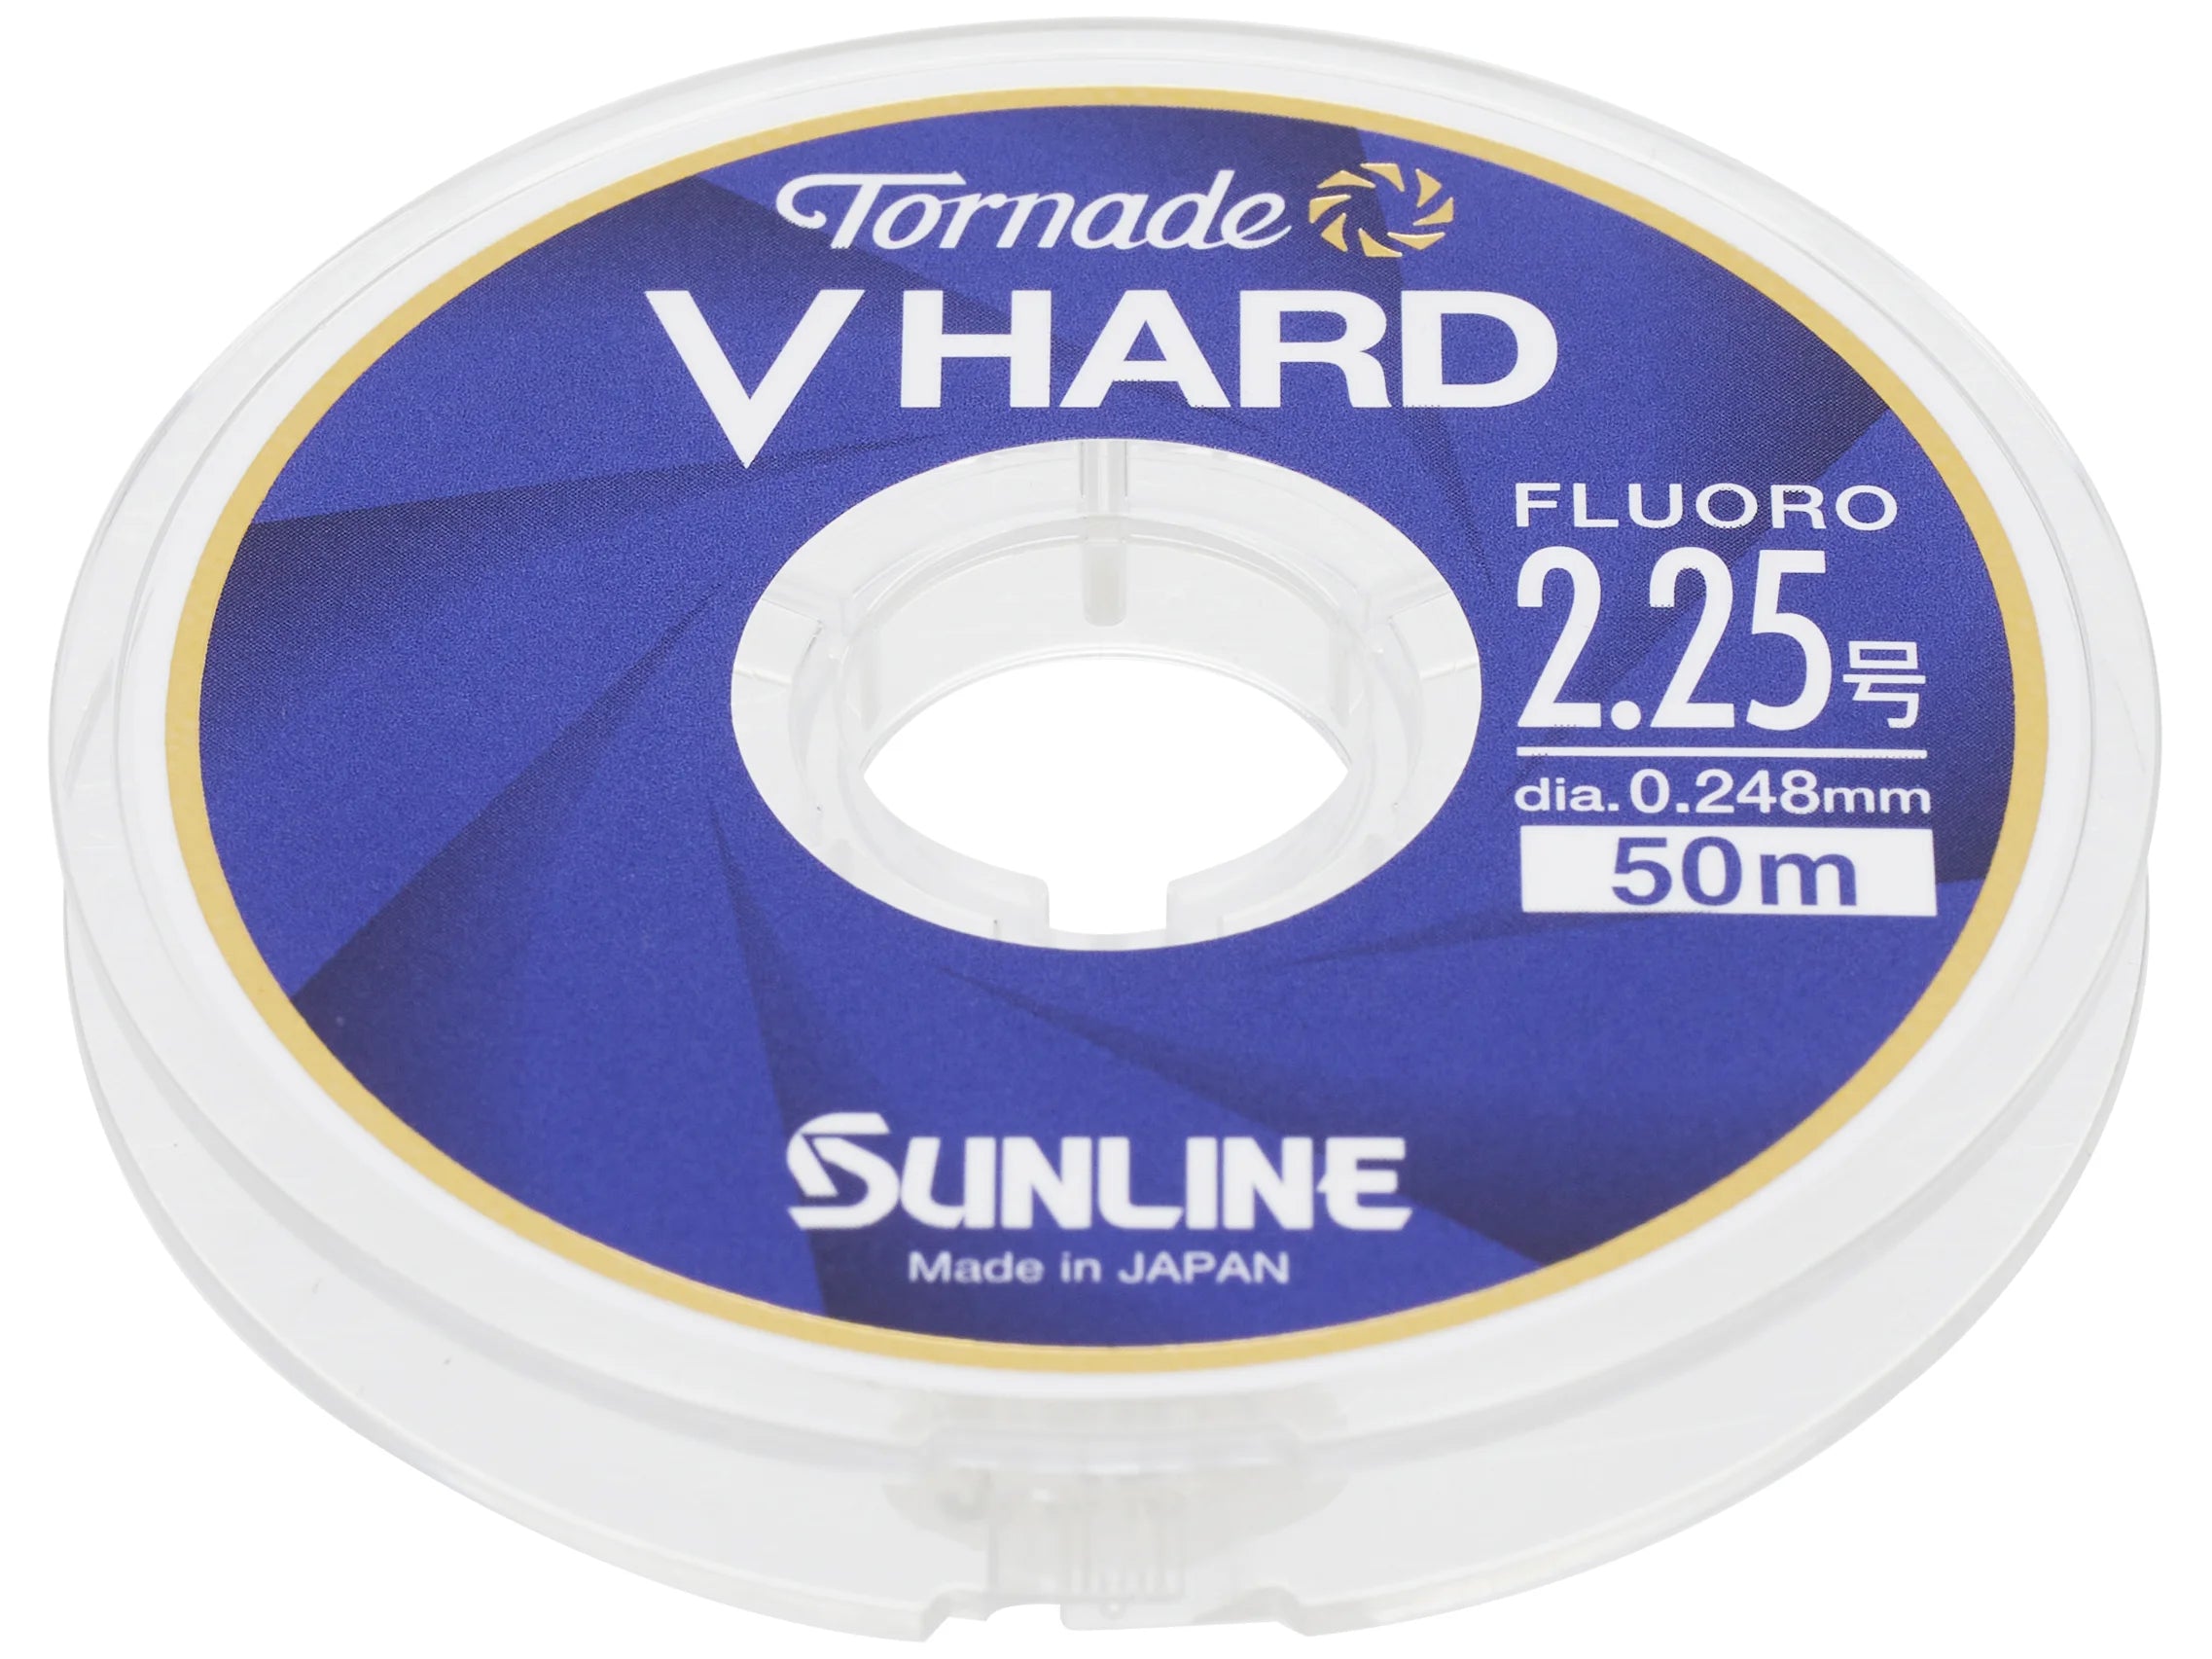 Sunline Tornado V-HARD FC Fuorocarbon Leader - 54 yd 6 lb